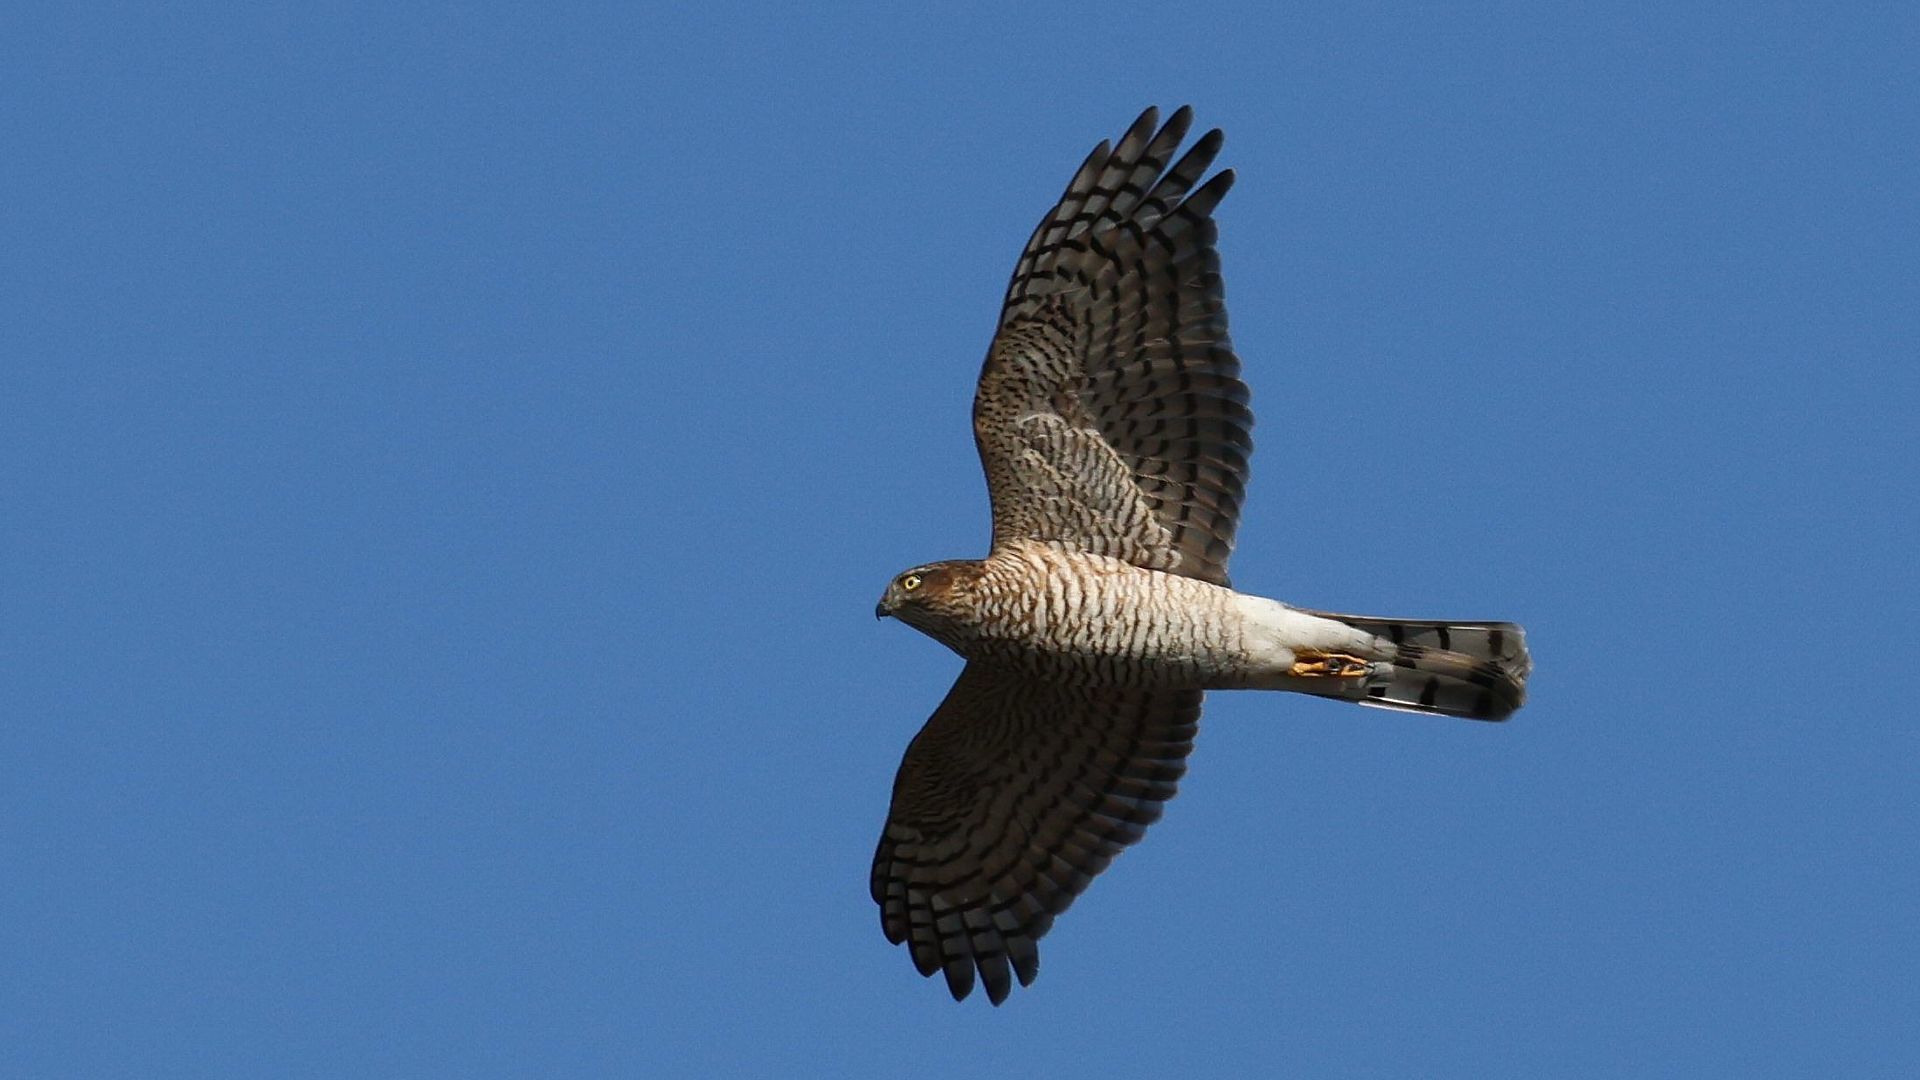  自宅そばの相模川でハイタカ飛翔２　Flying Eurasian sparrowhawk over the Sagami River near my house!_f0105570_17552137.jpg